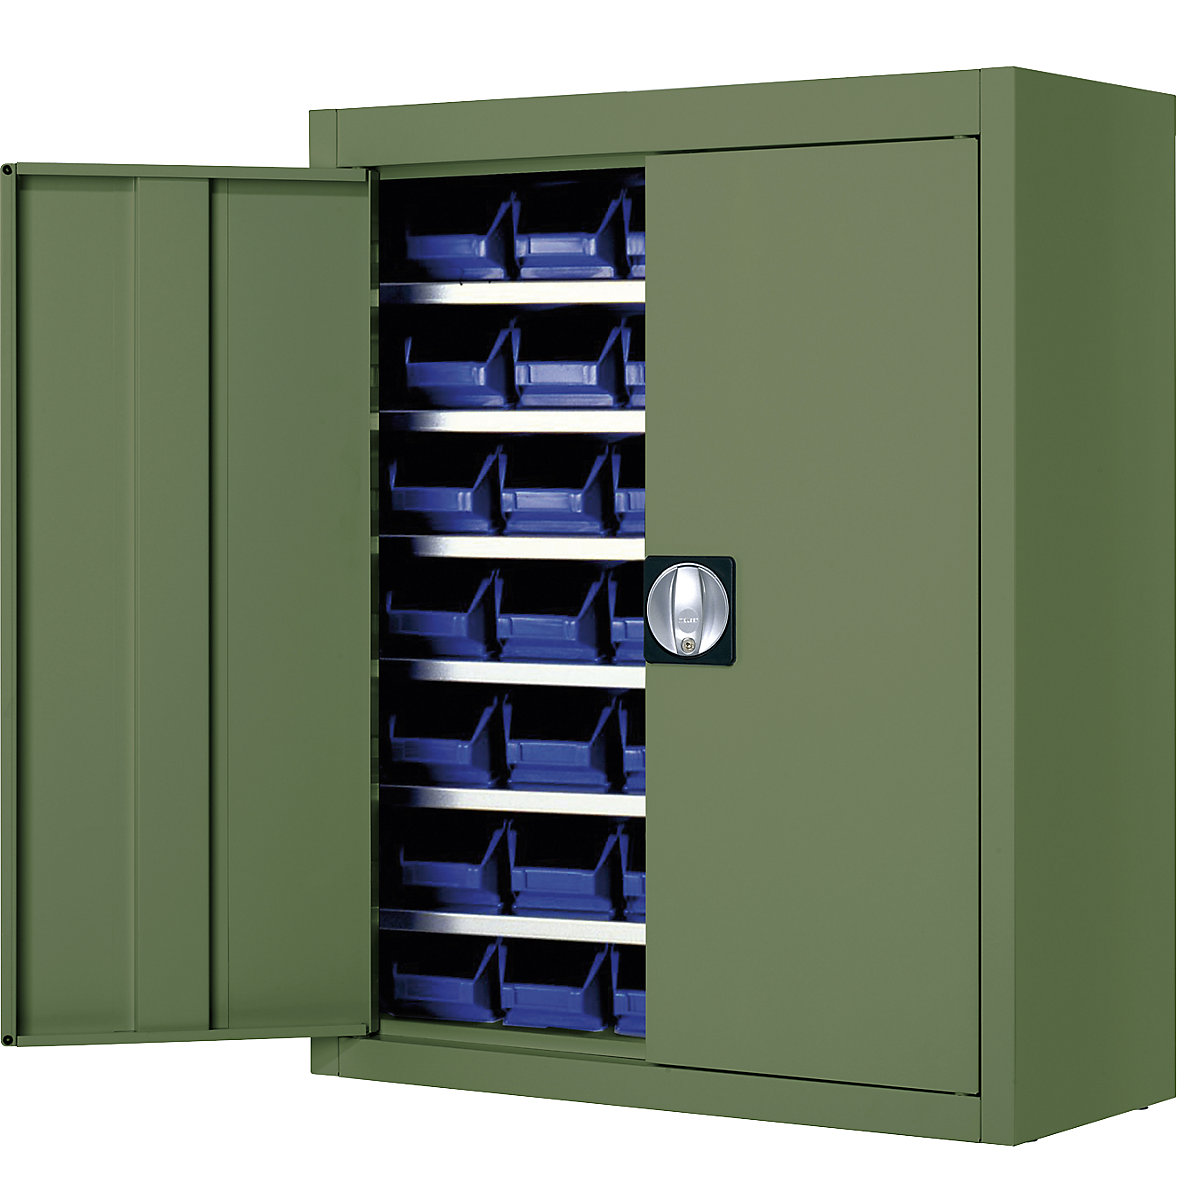 Skladišni ormar s otvorenim skladišnim kutijama – mauser, VxŠxD 820 x 680 x 280 mm, u jednoj boji, u zelenoj boji, 42 kutije, od 3 kom.-6